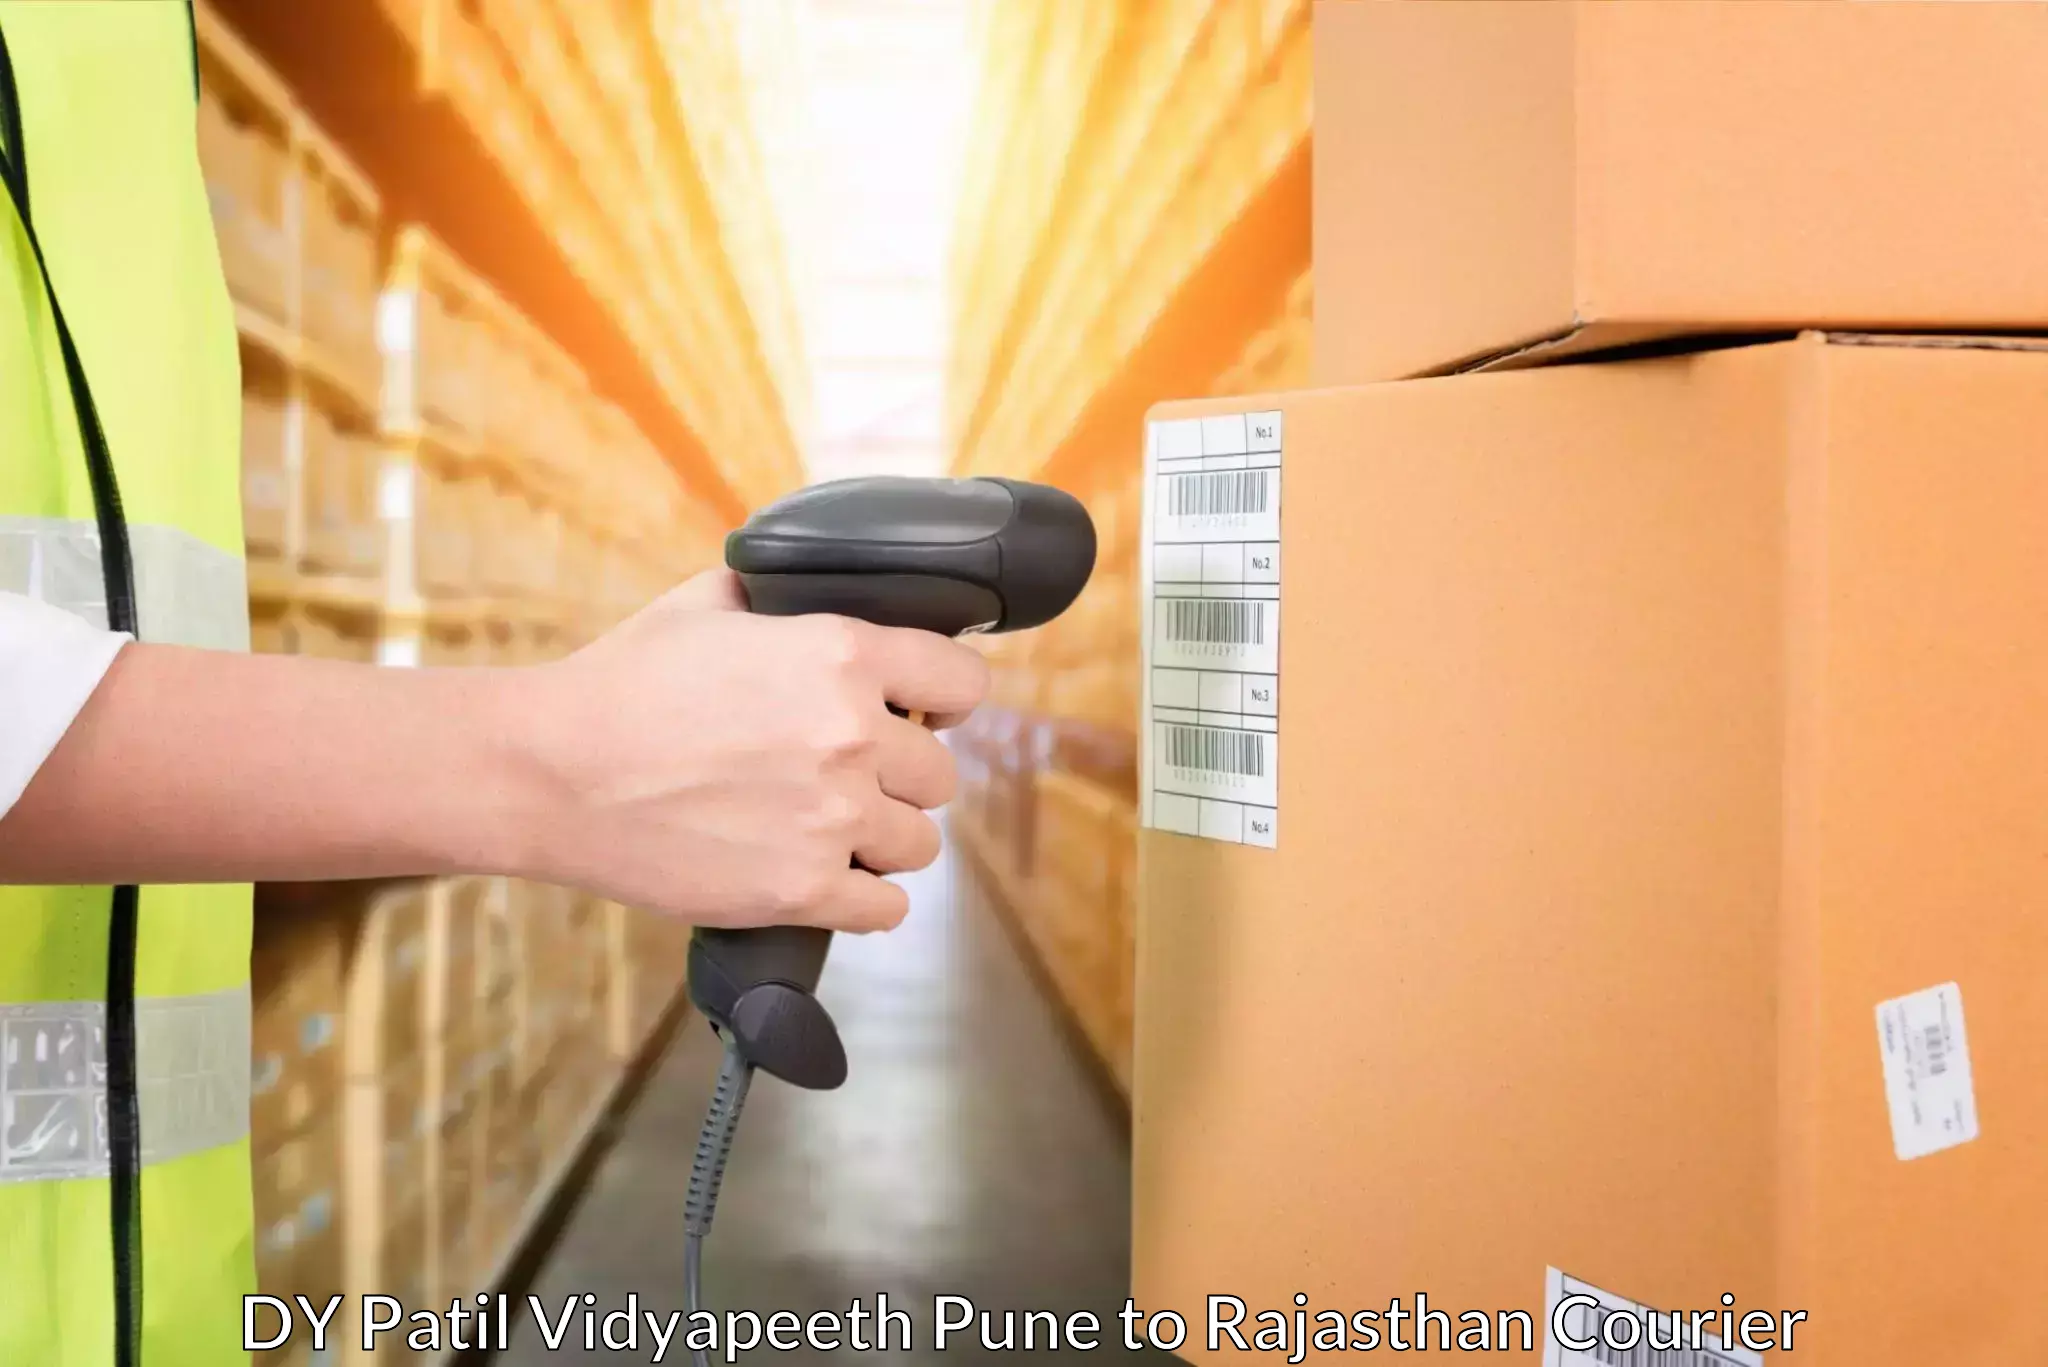 Express logistics DY Patil Vidyapeeth Pune to Kuchaman